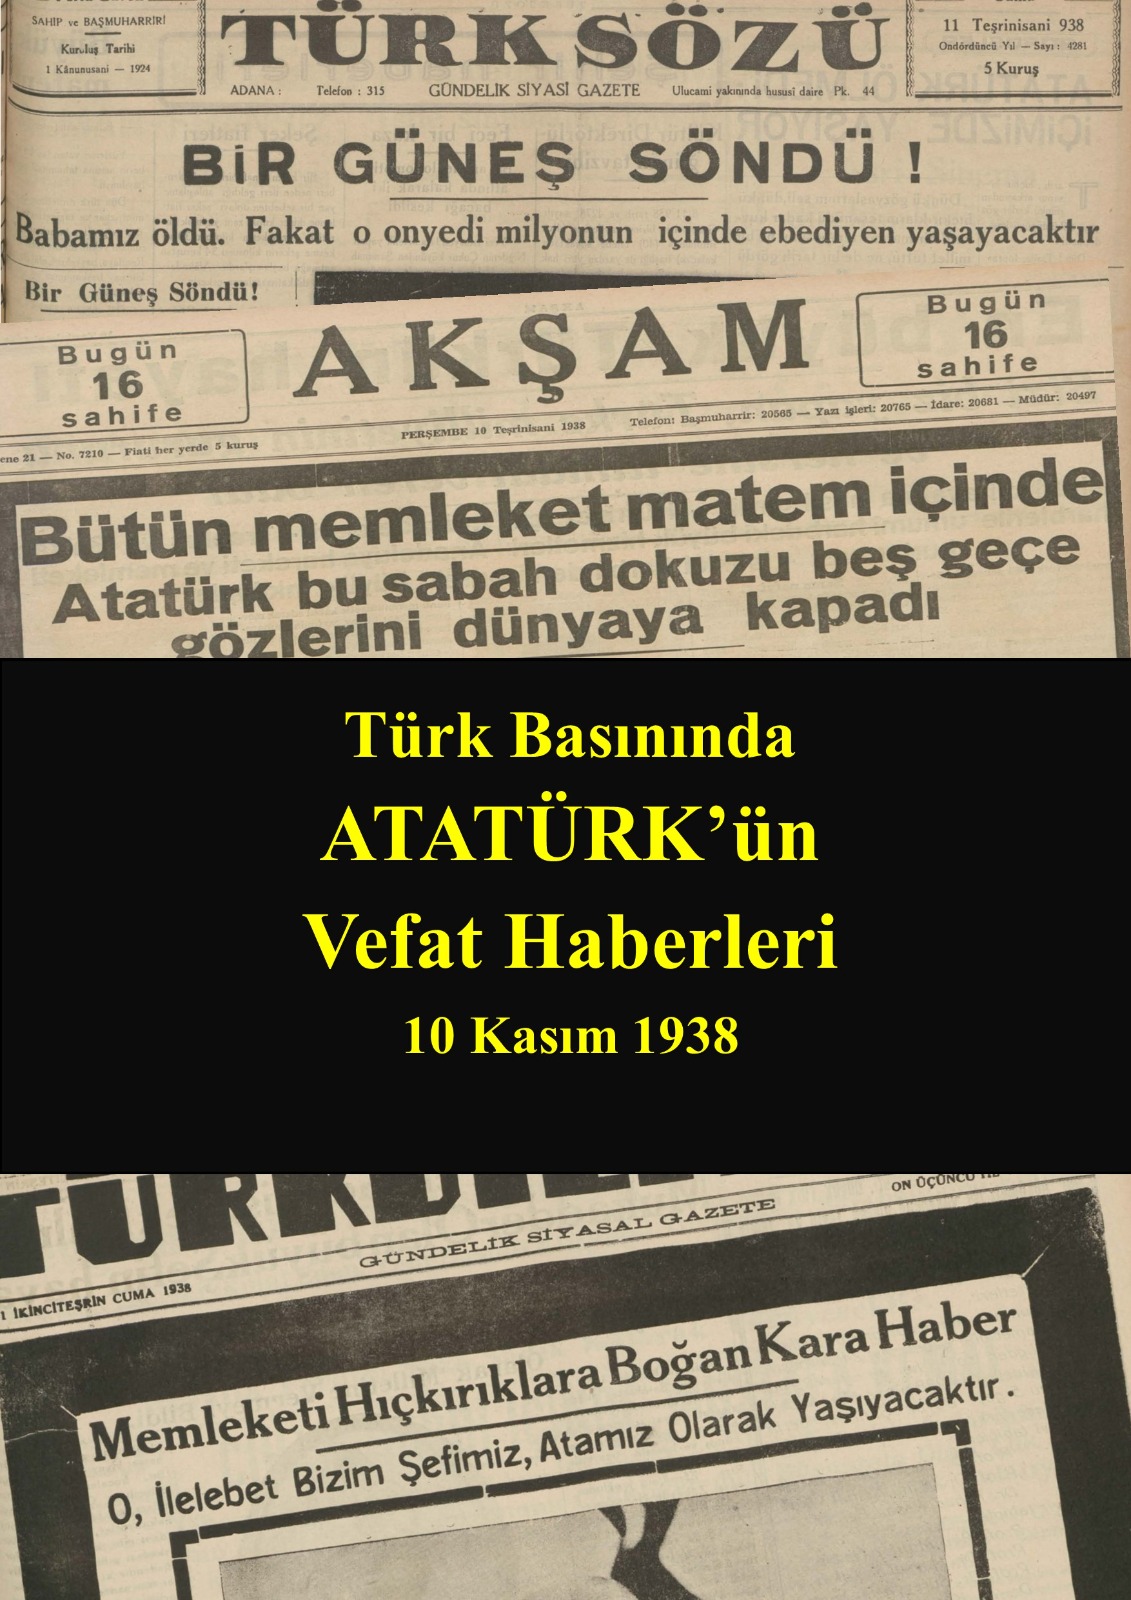  Atatürk'ün Vefat Haberleri 10 KASIM 1938